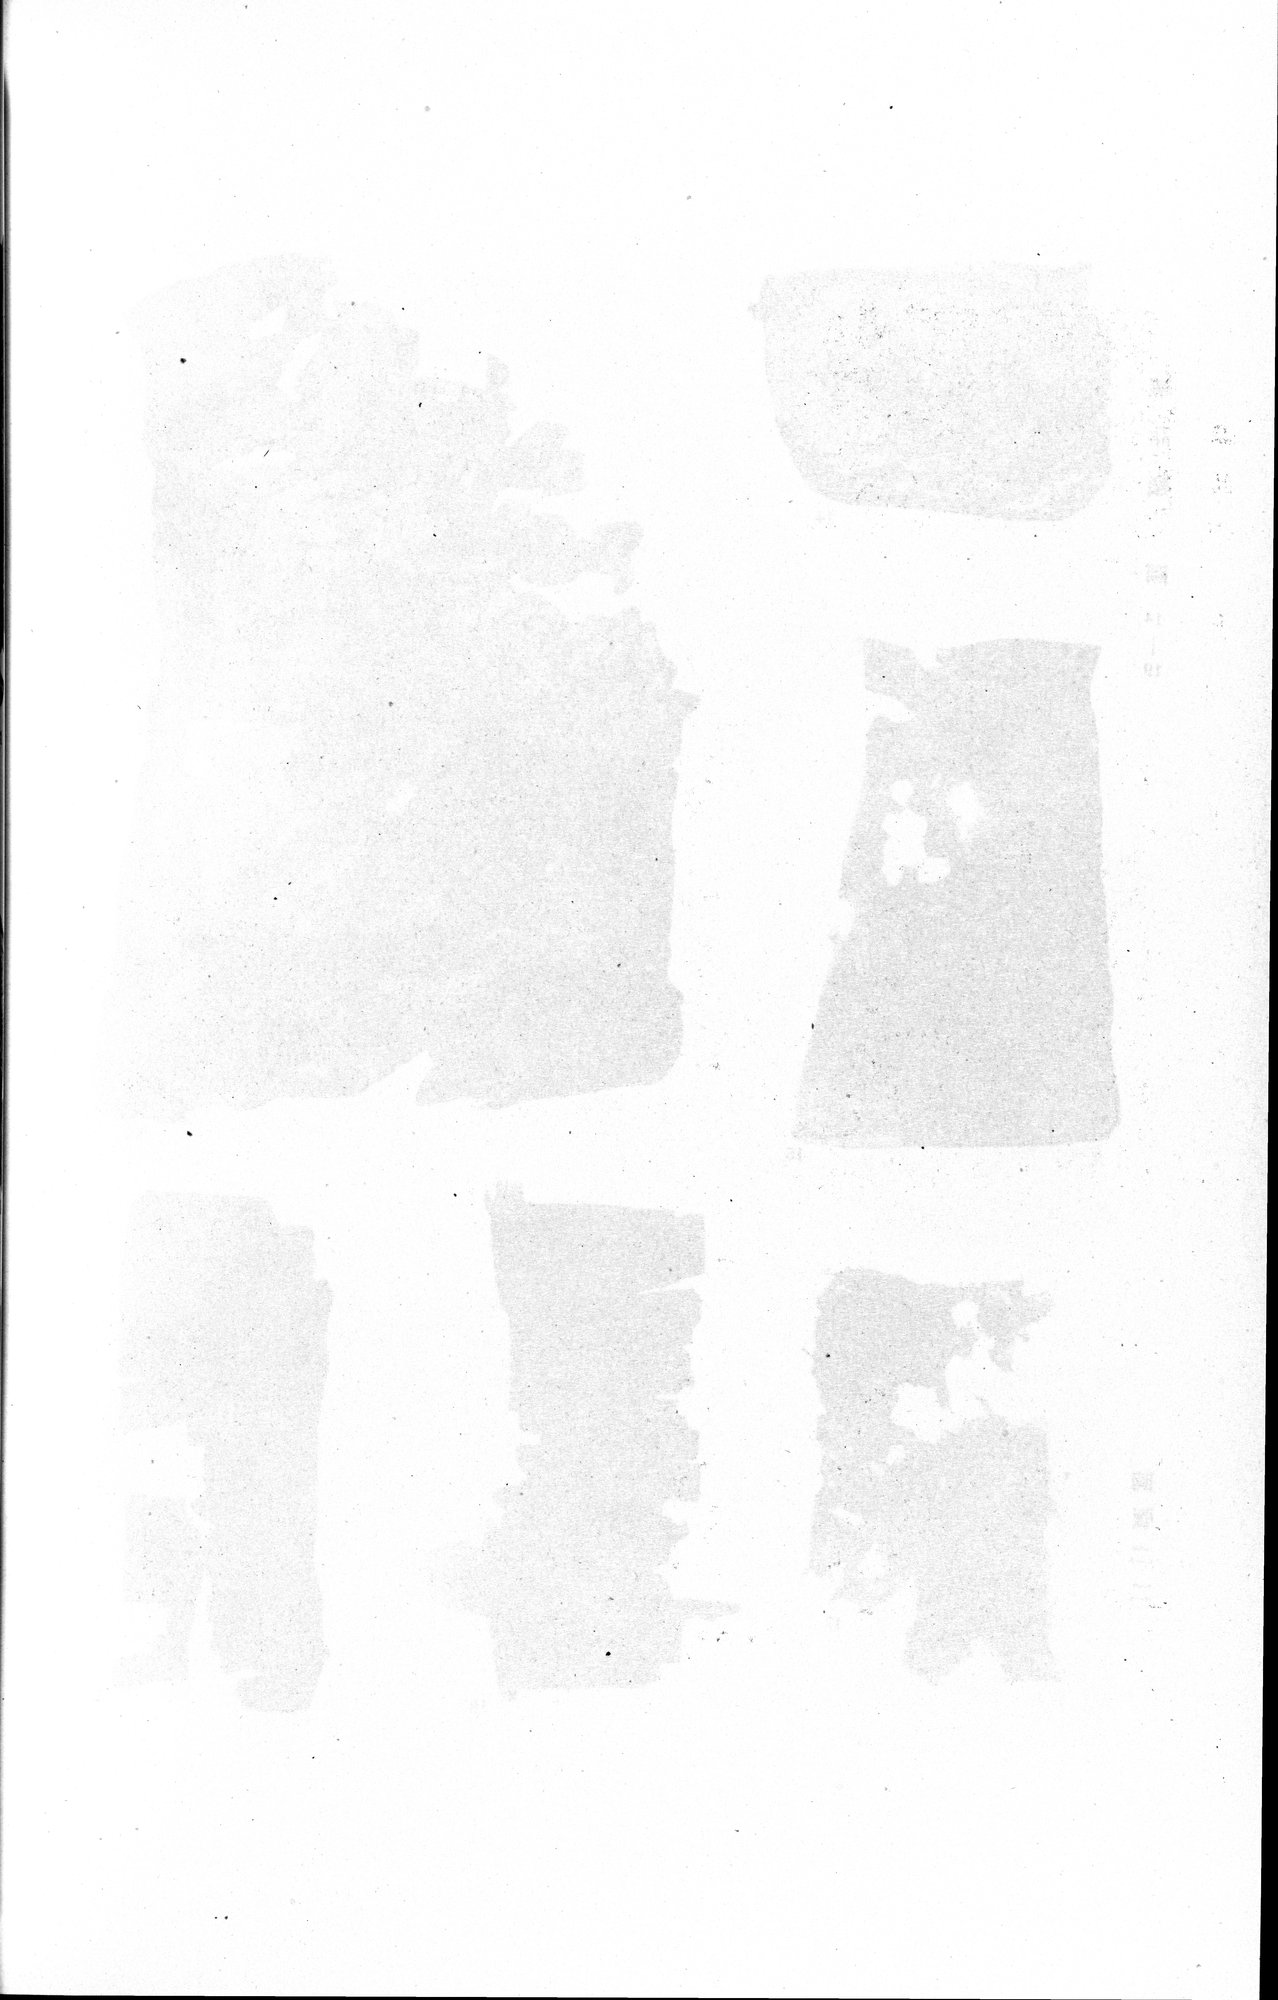 羅布淖爾考古記 : vol.1 / Page 336 (Grayscale High Resolution Image)